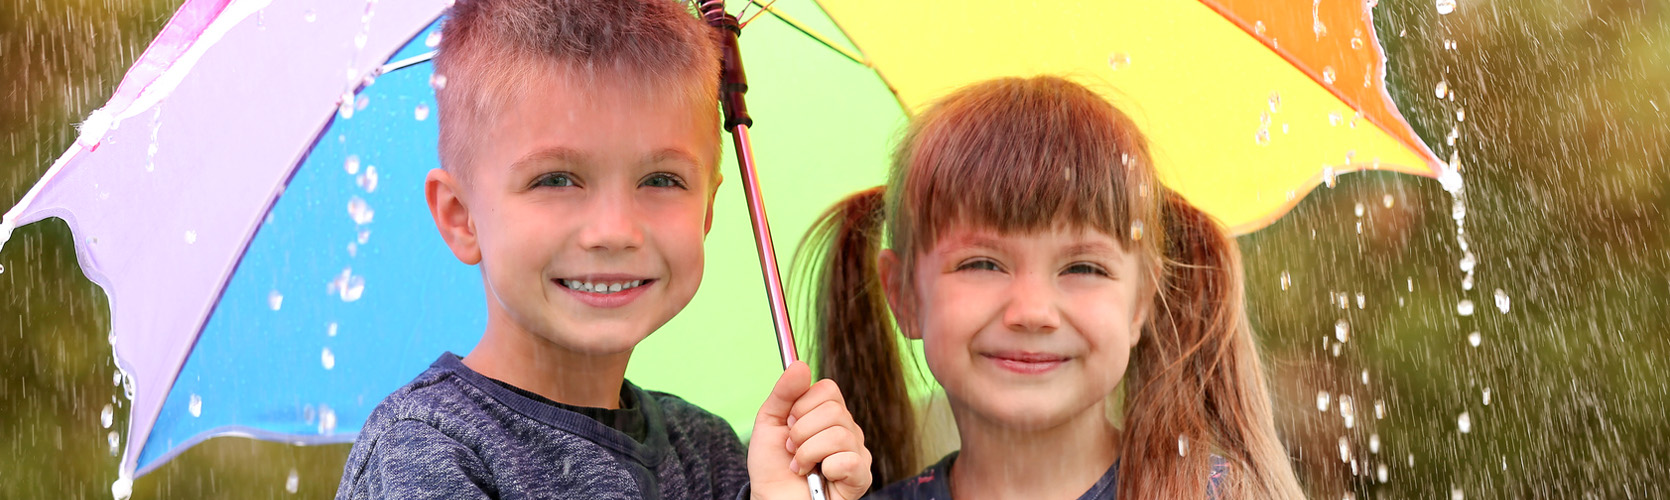 Zwei Kinder unterm Regenschirm